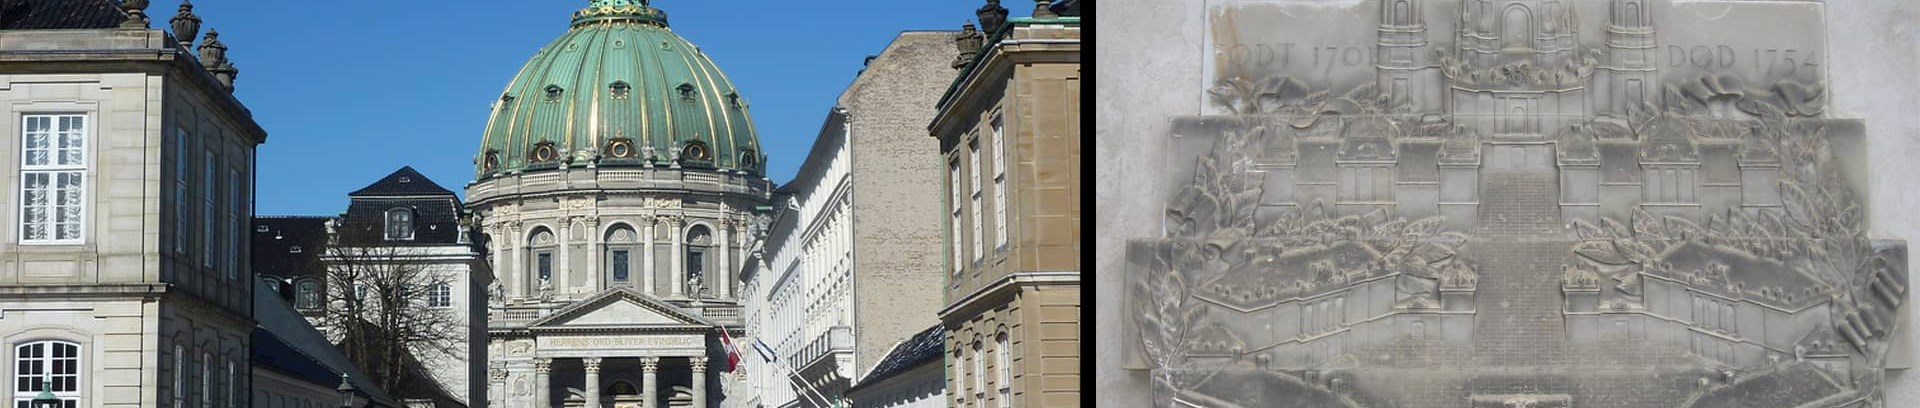 Historie og arkitektur på Kulturhøjskolen ved FOF Aarhus